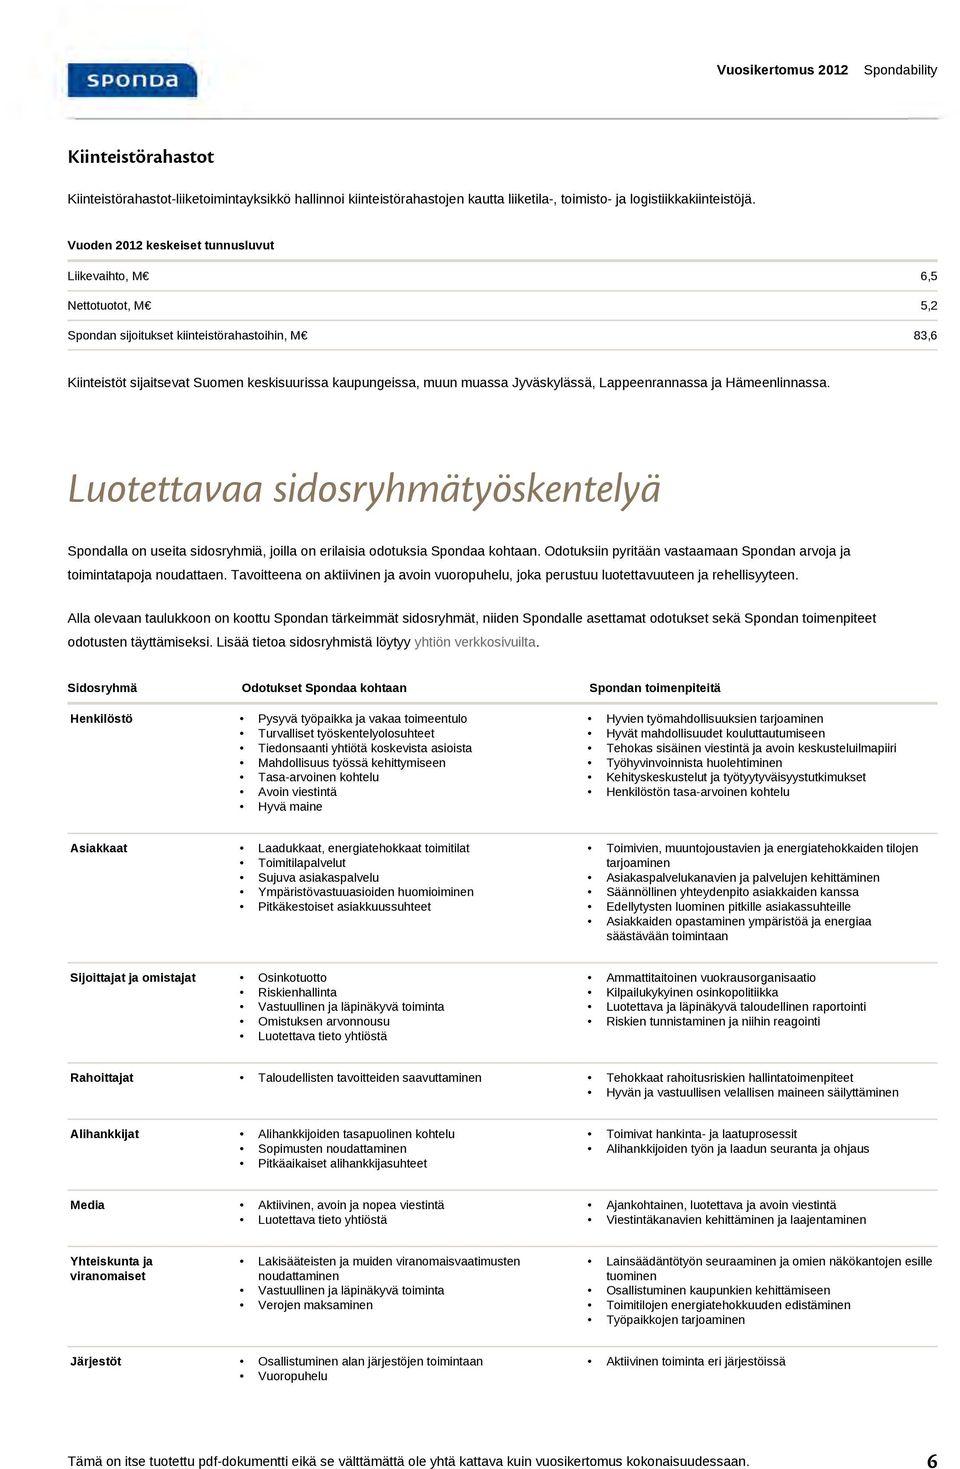 Jyväskylässä, Lappeenrannassa ja Hämeenlinnassa. Luotettavaa sidosryhmätyöskentelyä Spondalla on useita sidosryhmiä, joilla on erilaisia odotuksia Spondaa kohtaan.